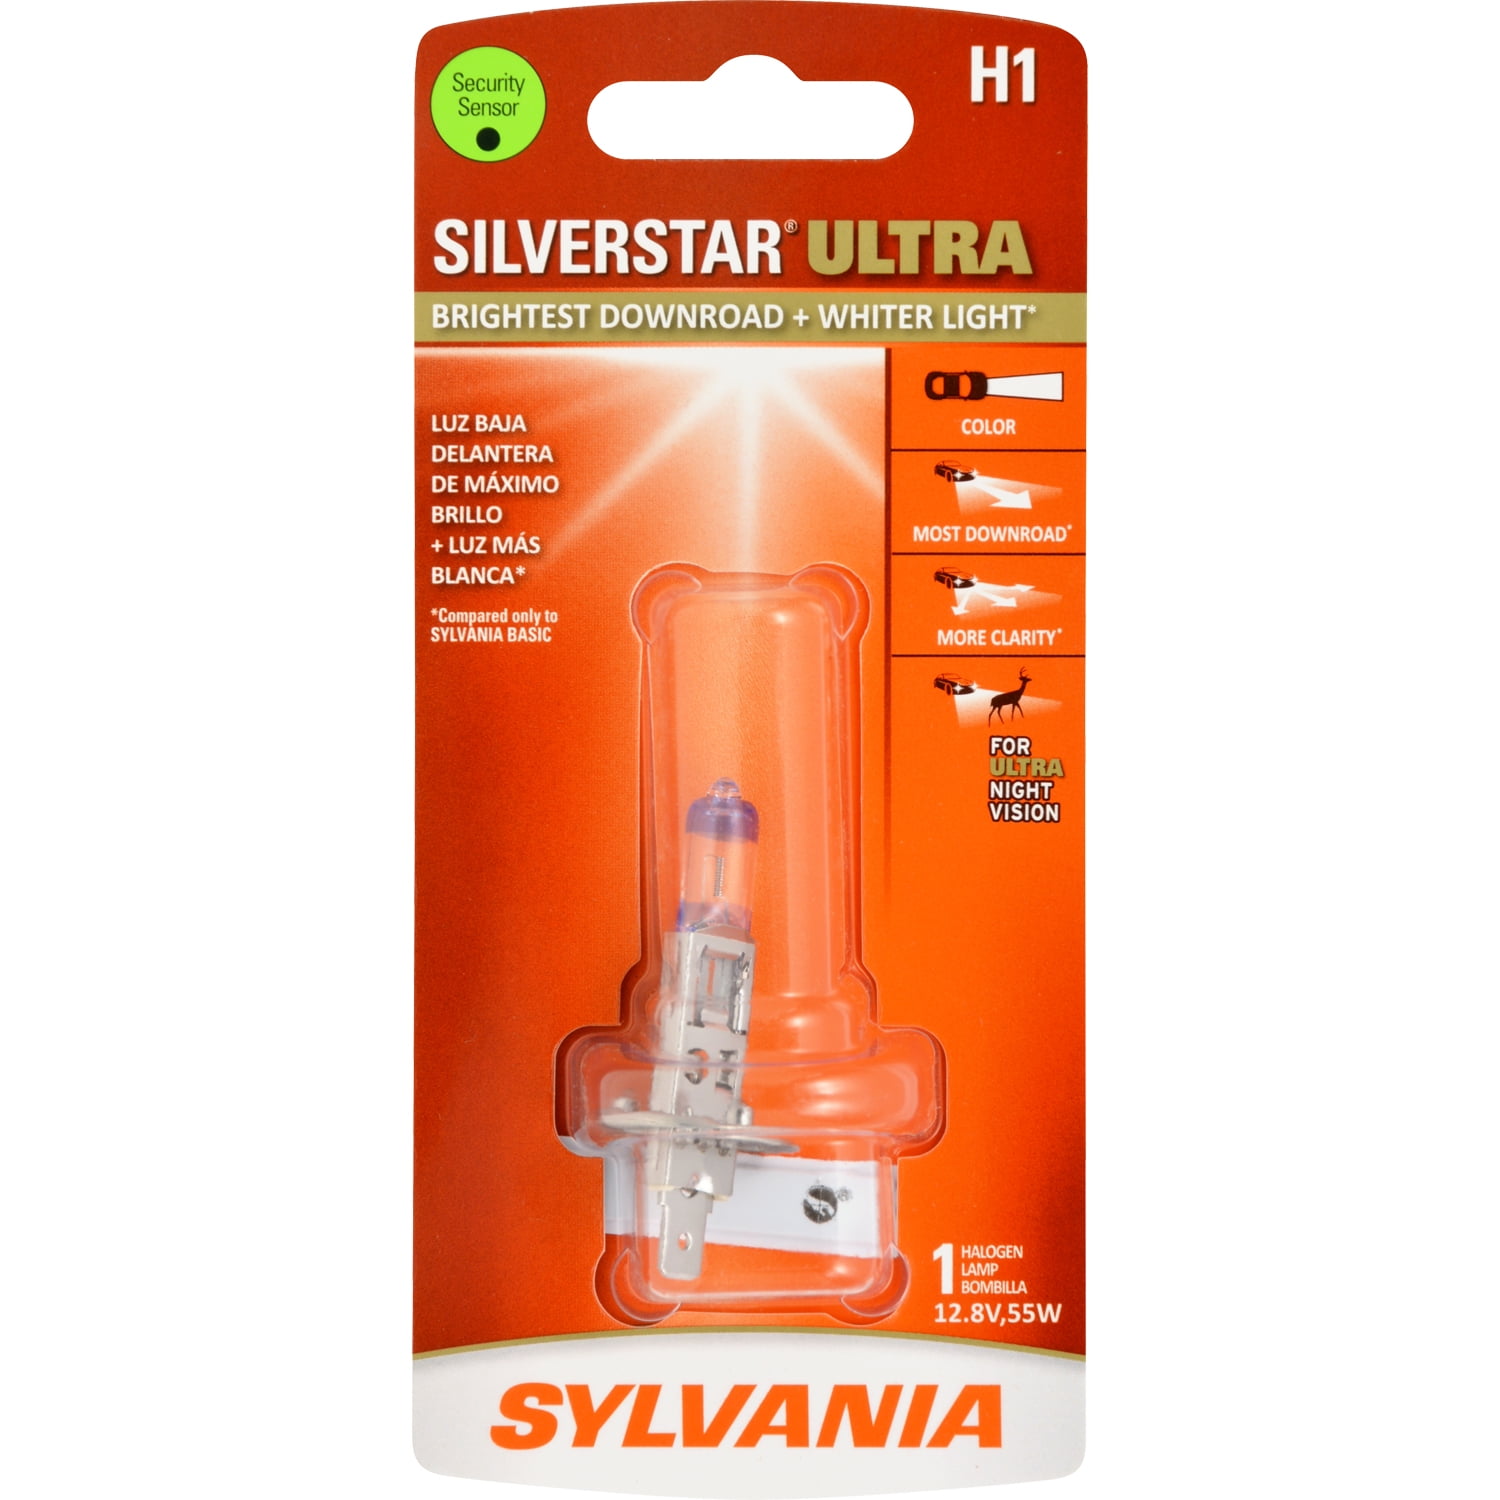 Sylvania H1 SilverStar Ultra Halogen Headlight Bulb, Pack of 1.